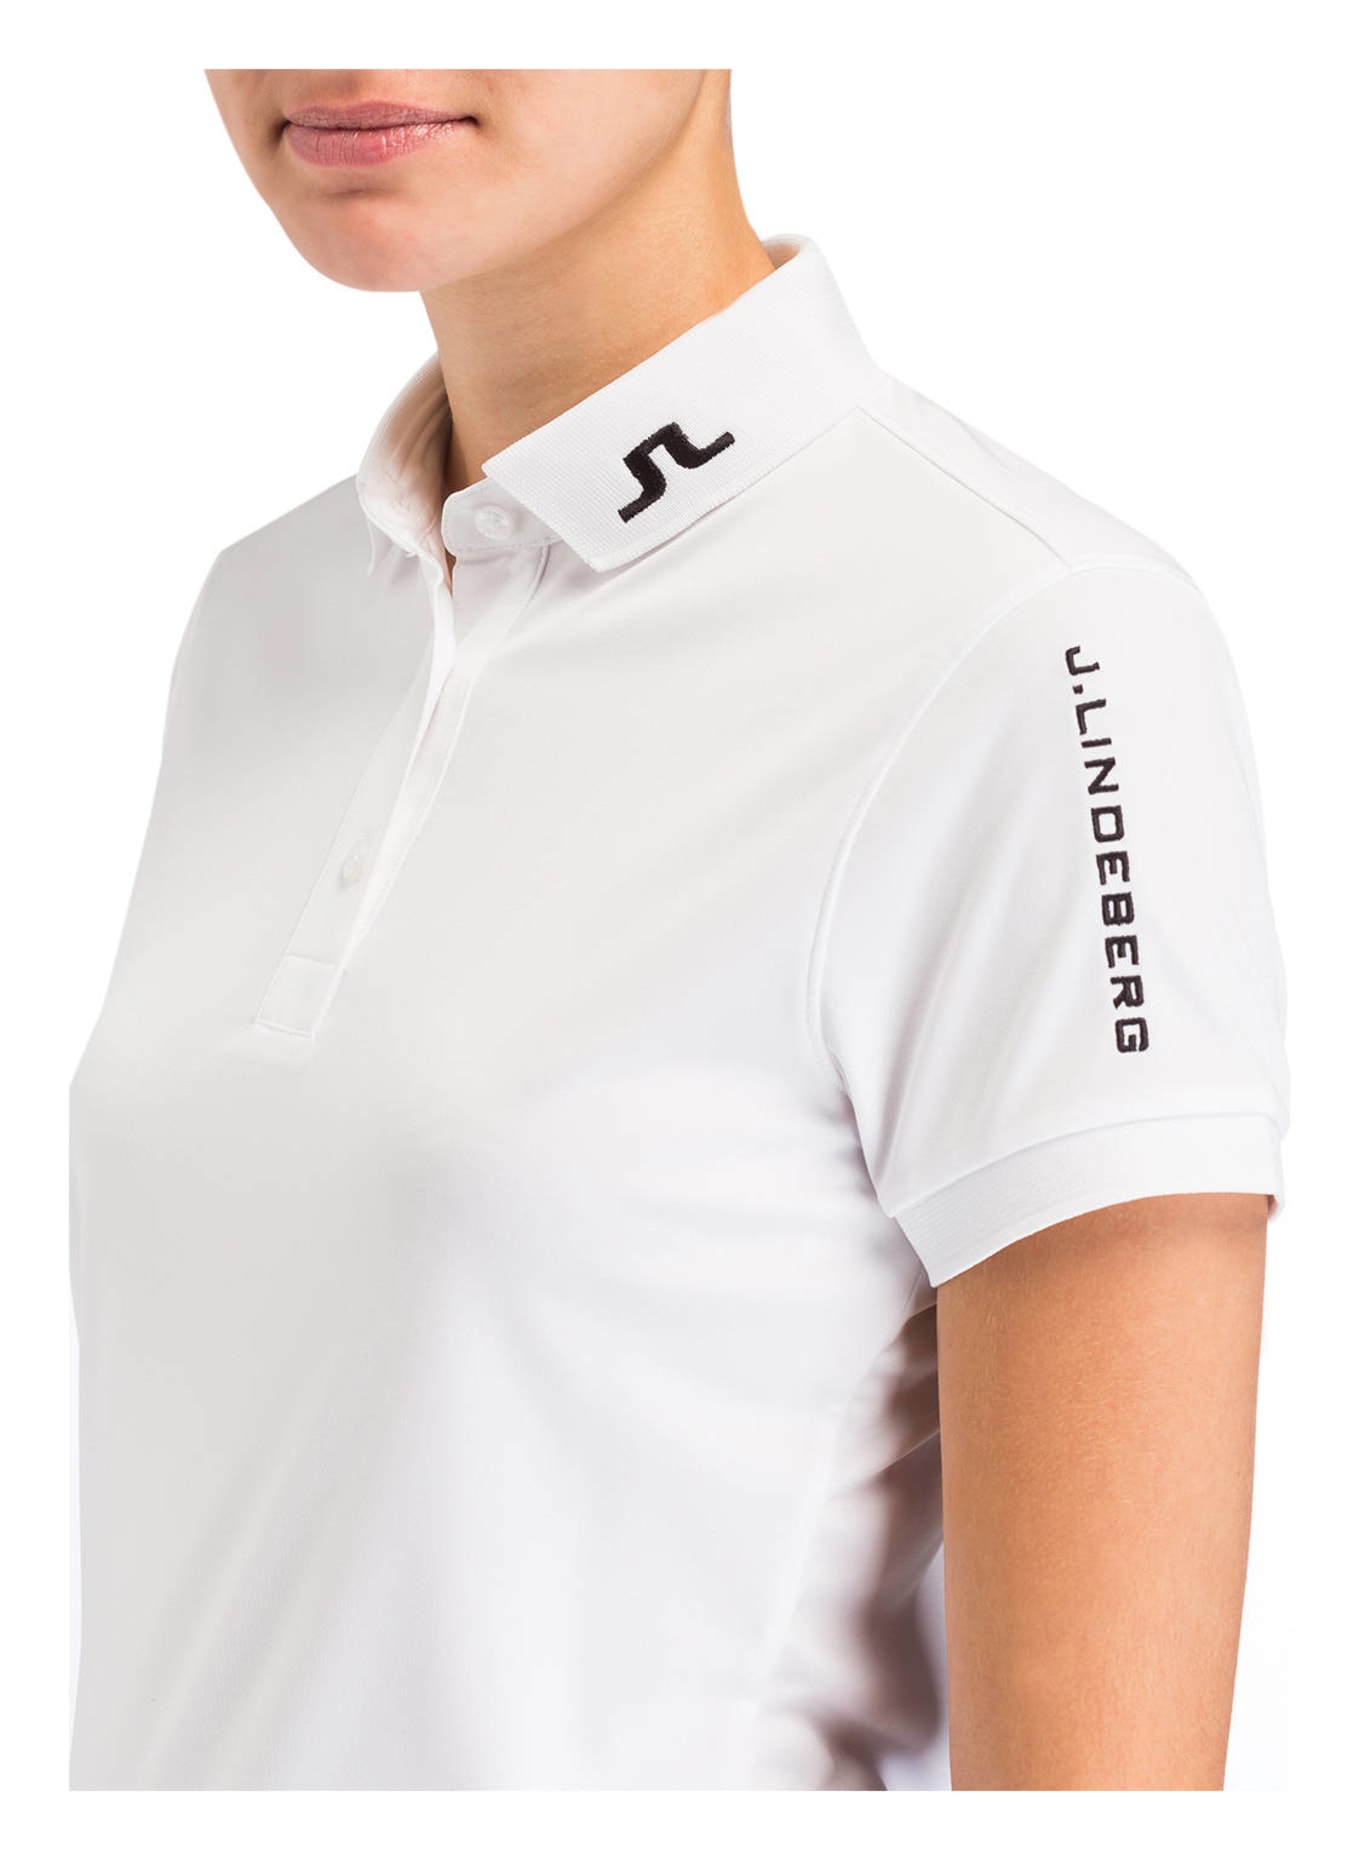 J.LINDEBERG Performance polo shirt , Color: WHITE (Image 4)